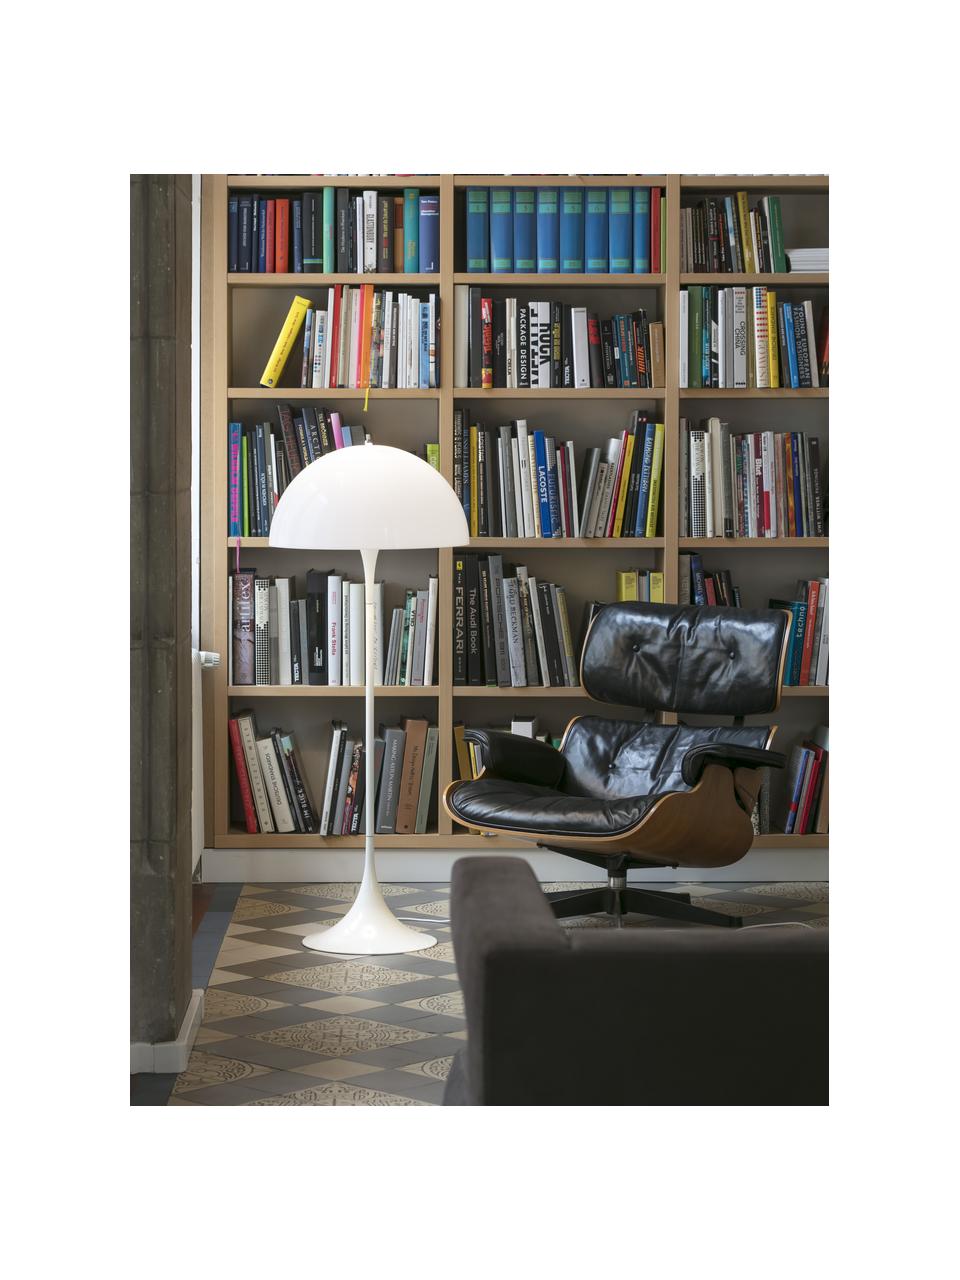 Kleine Stehlampe Panthella, Lampenschirm: Acrylglas, Weiß, H 129 cm